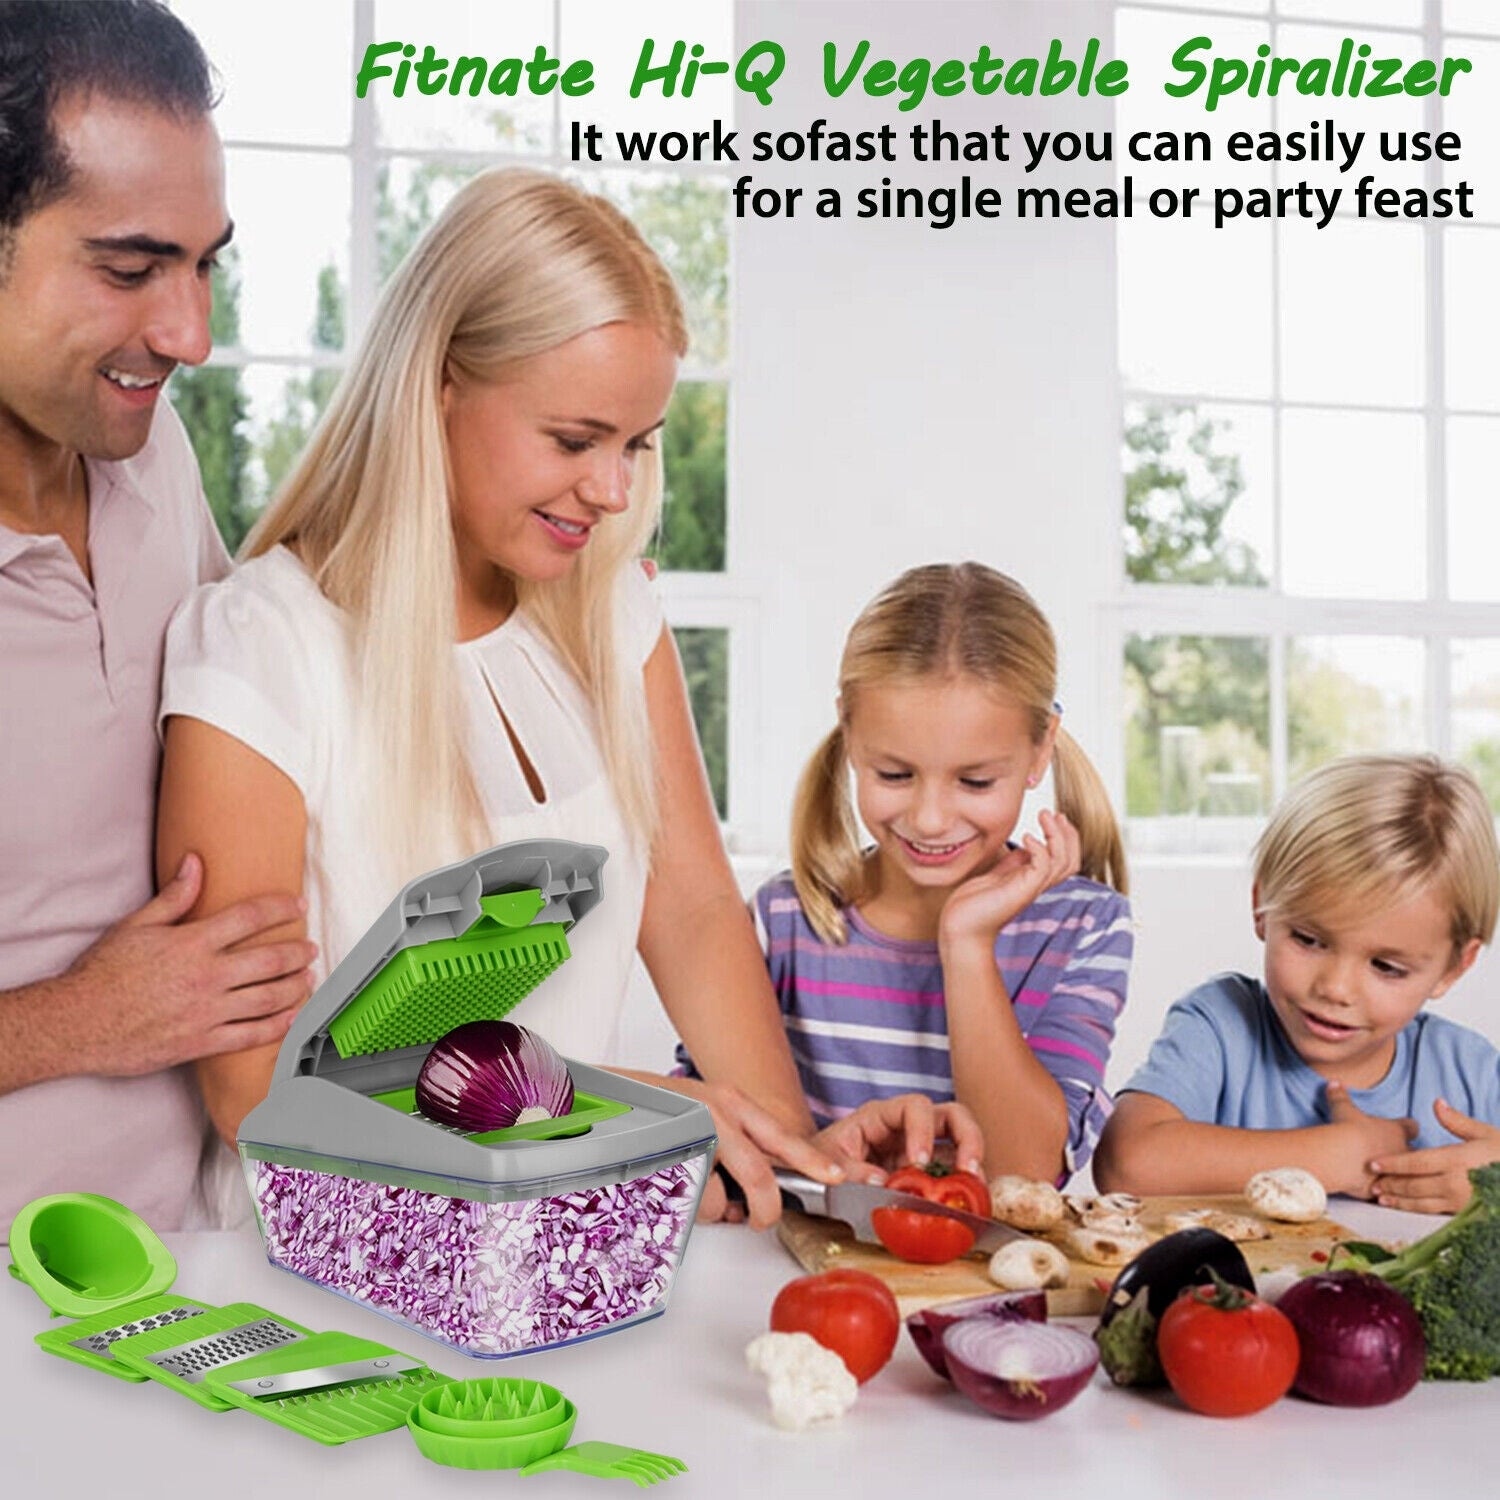 13/14Pcs Vegetable Slicer Dicer Food Fruit Chopper Kitchen Cutter Tools  On Sale Bed Bath  Beyond 32603914